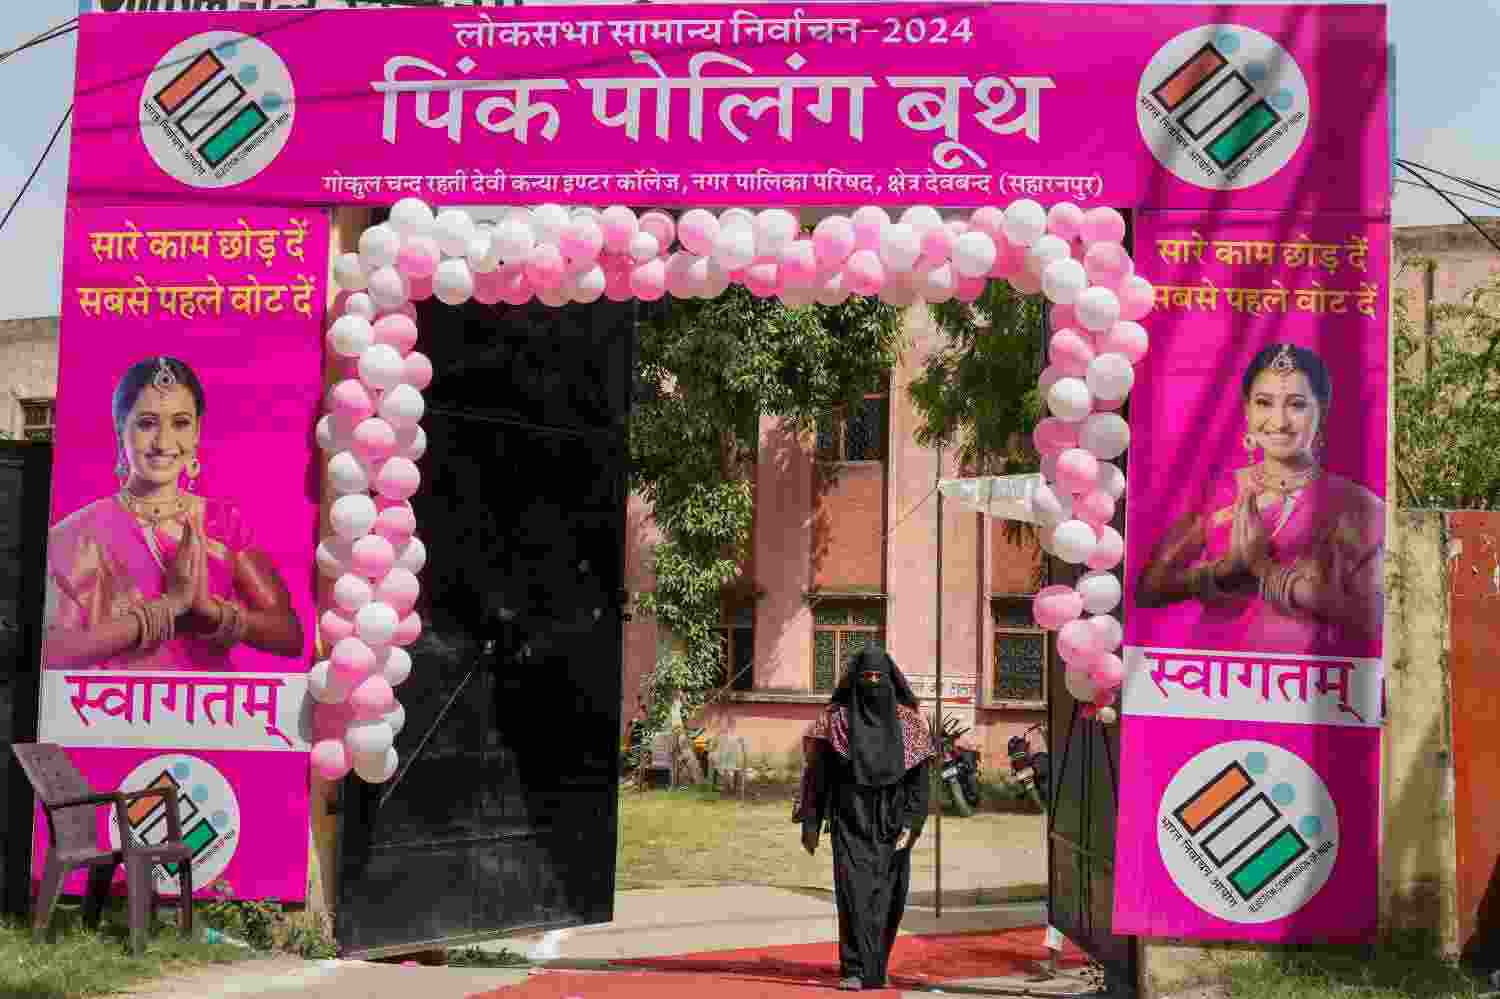 Naari Shakti: Women throng to 'pink booths' to vote in LS polls